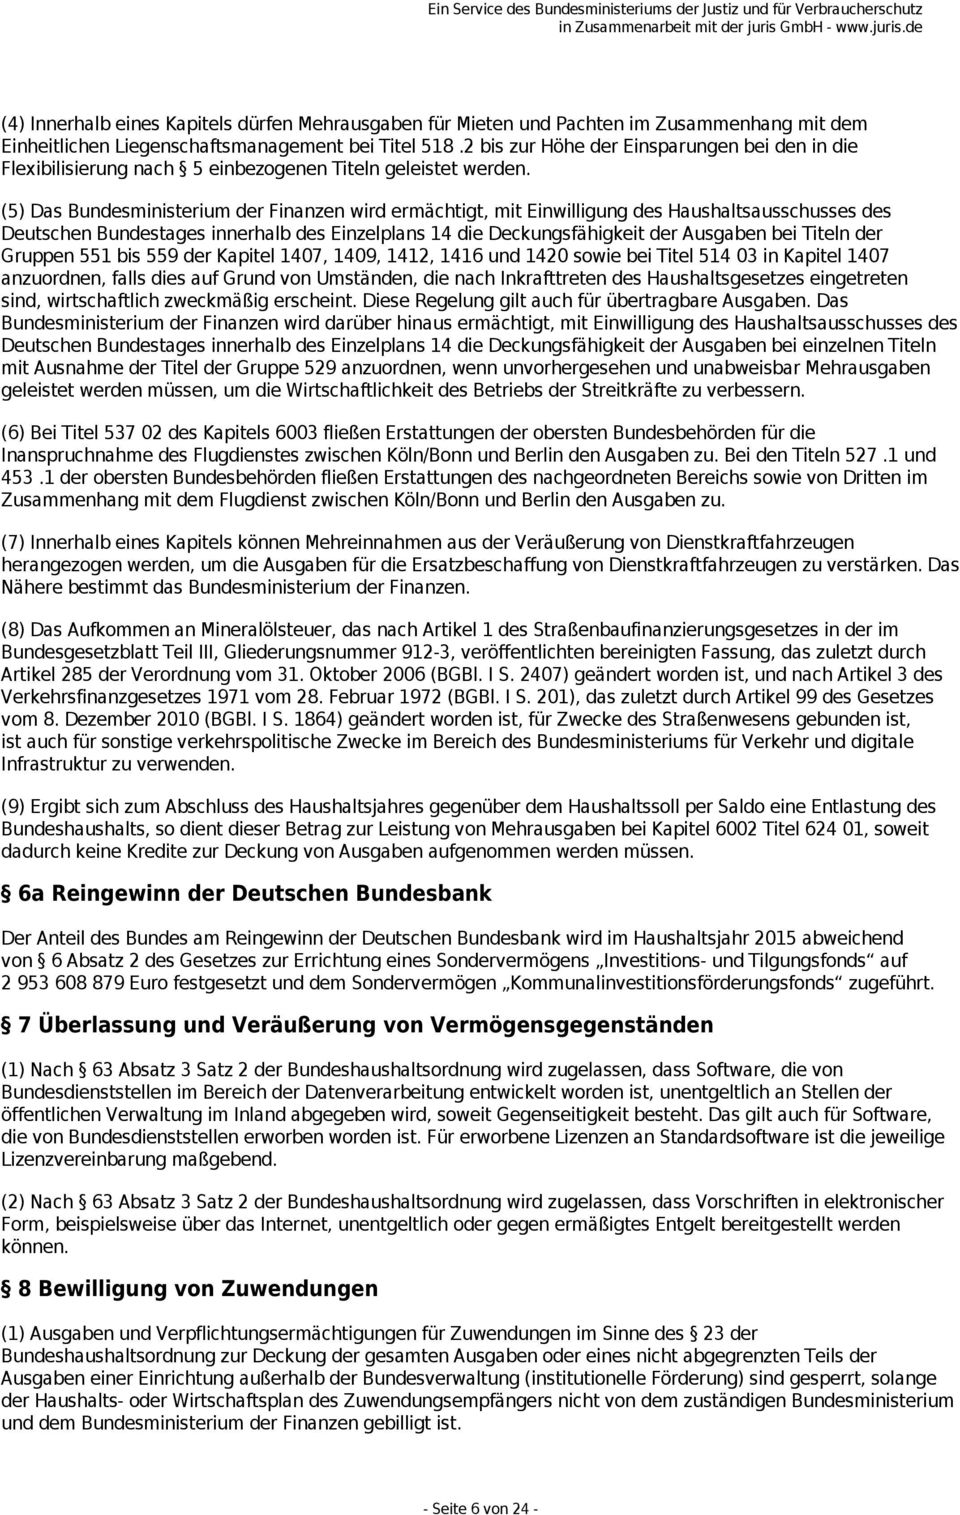 (5) Das Bundesministerium der Finanzen wird ermächtigt, mit Einwilligung des Haushaltsausschusses des Deutschen Bundestages innerhalb des Einzelplans 14 die Deckungsfähigkeit der Ausgaben bei Titeln